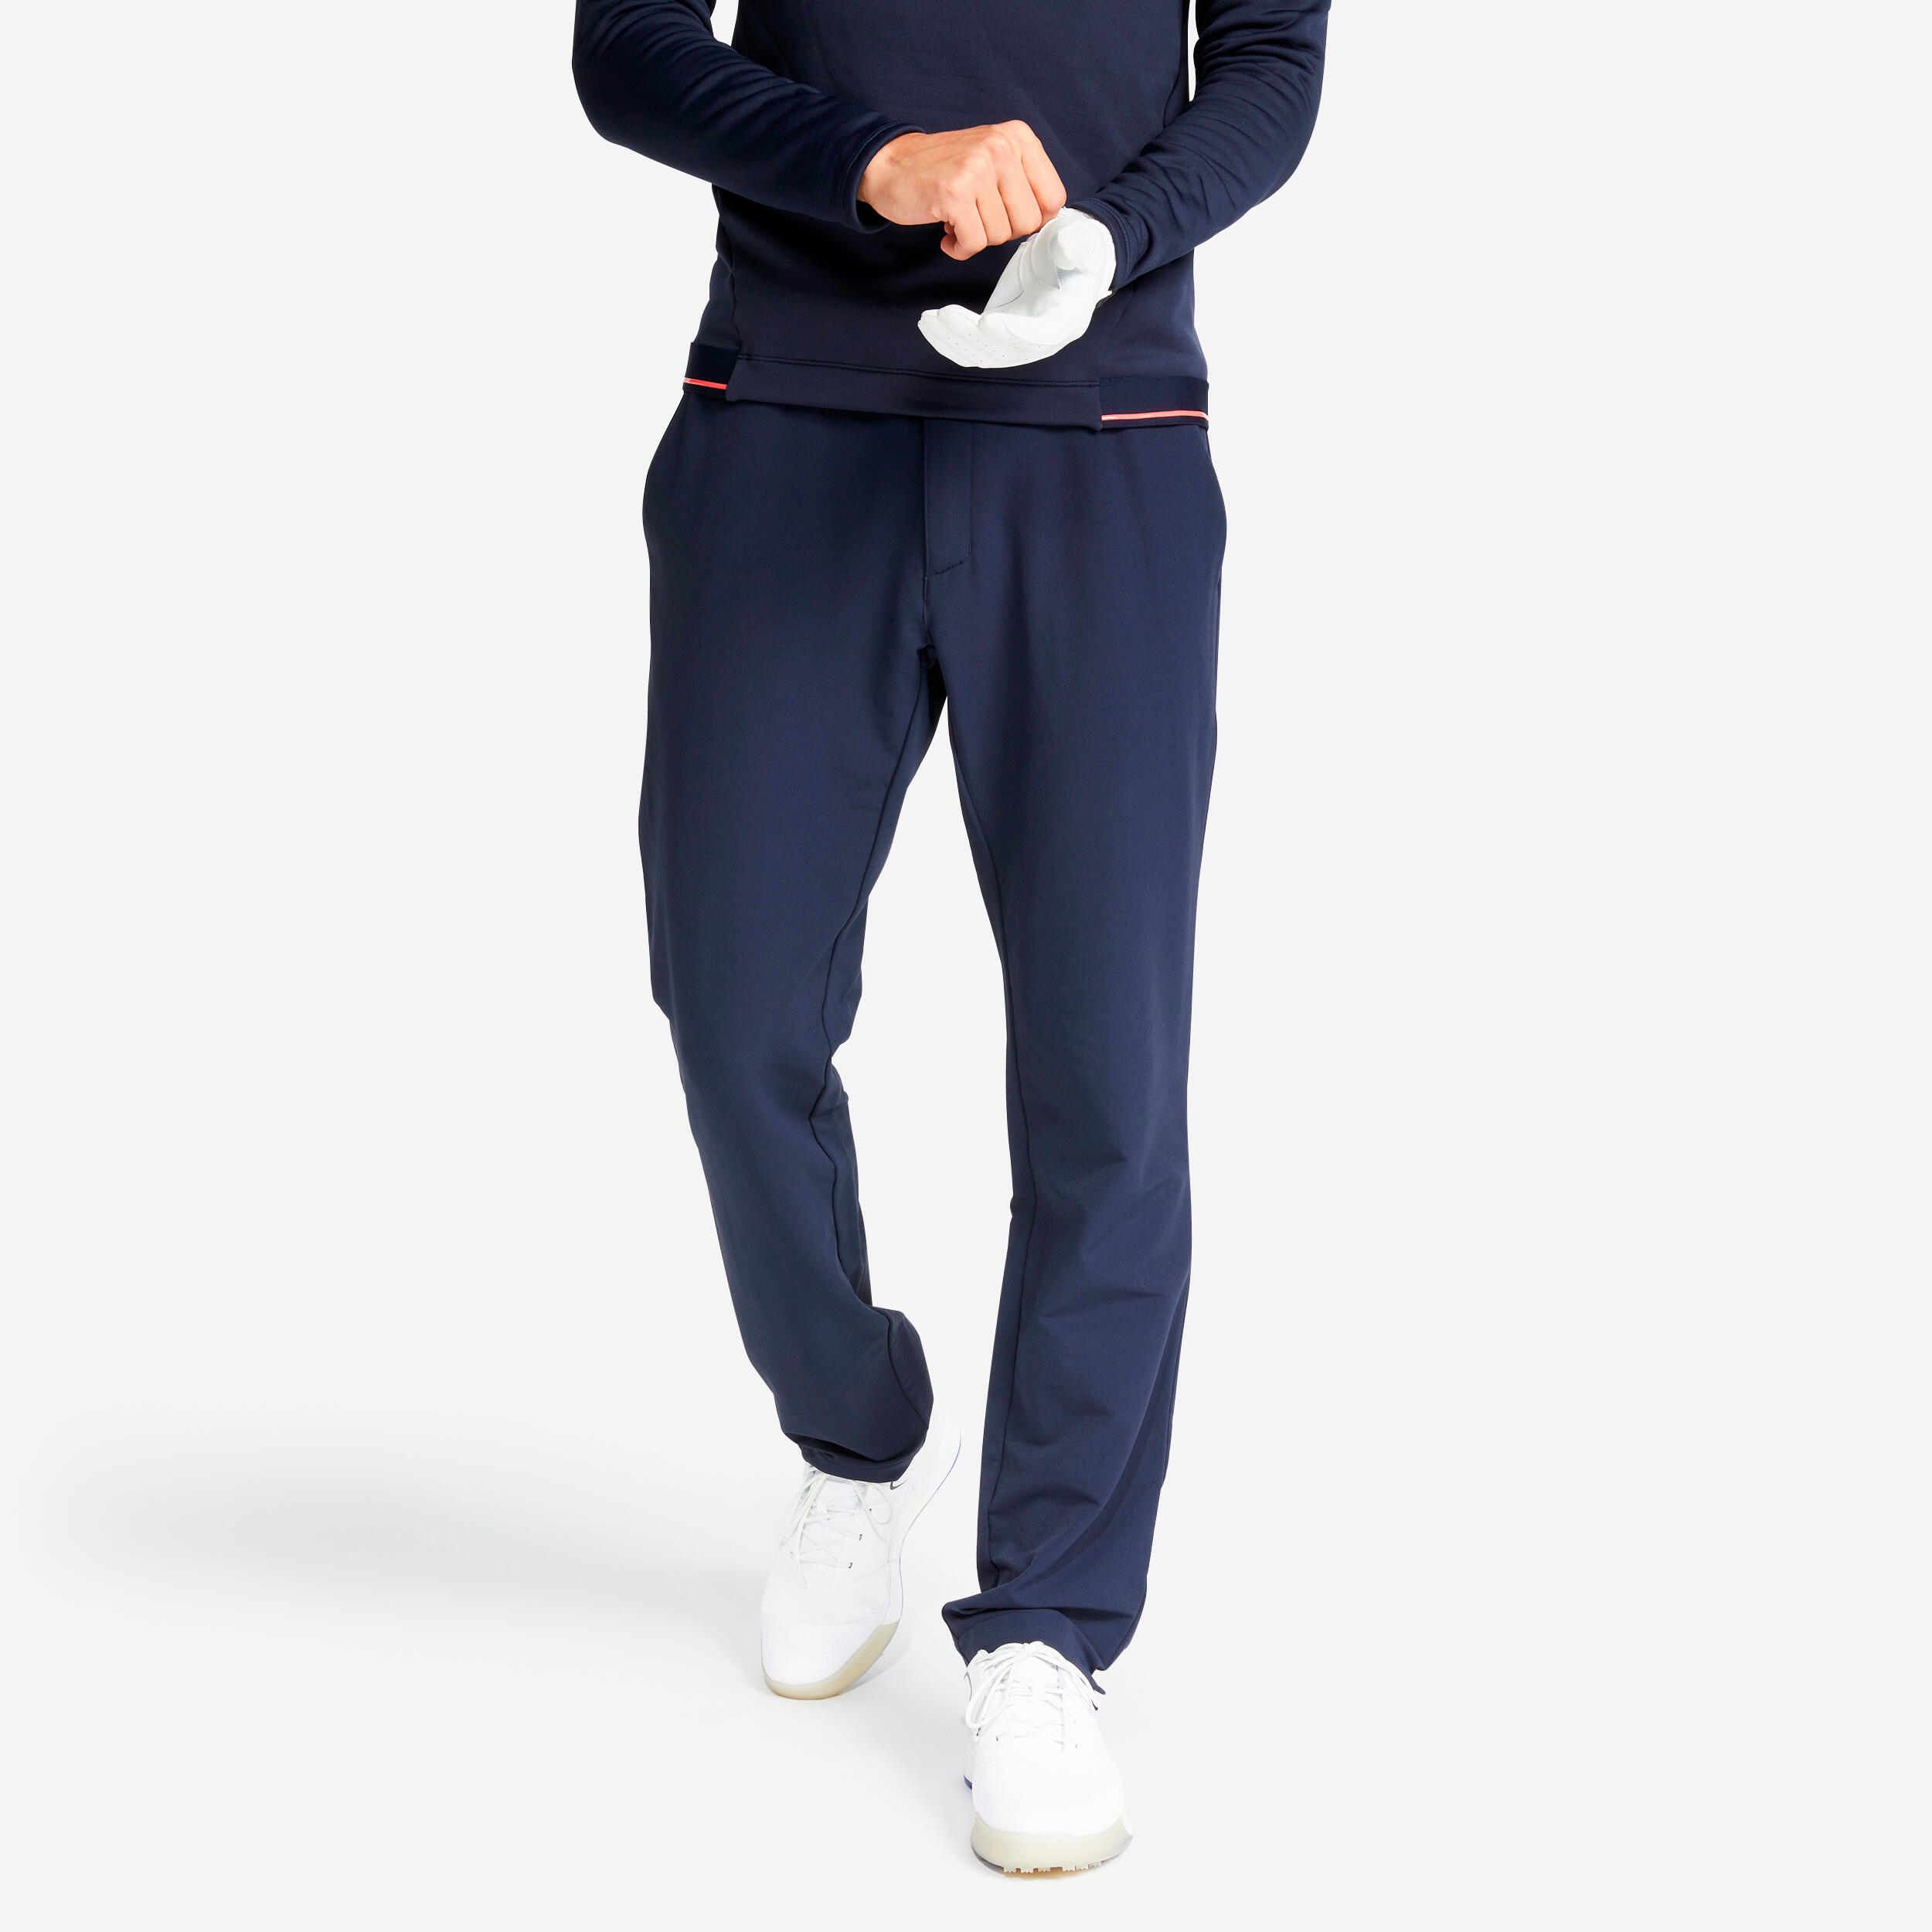 Pantalon golf CW500 Vreme rece Bleumarin Bărbați barbati